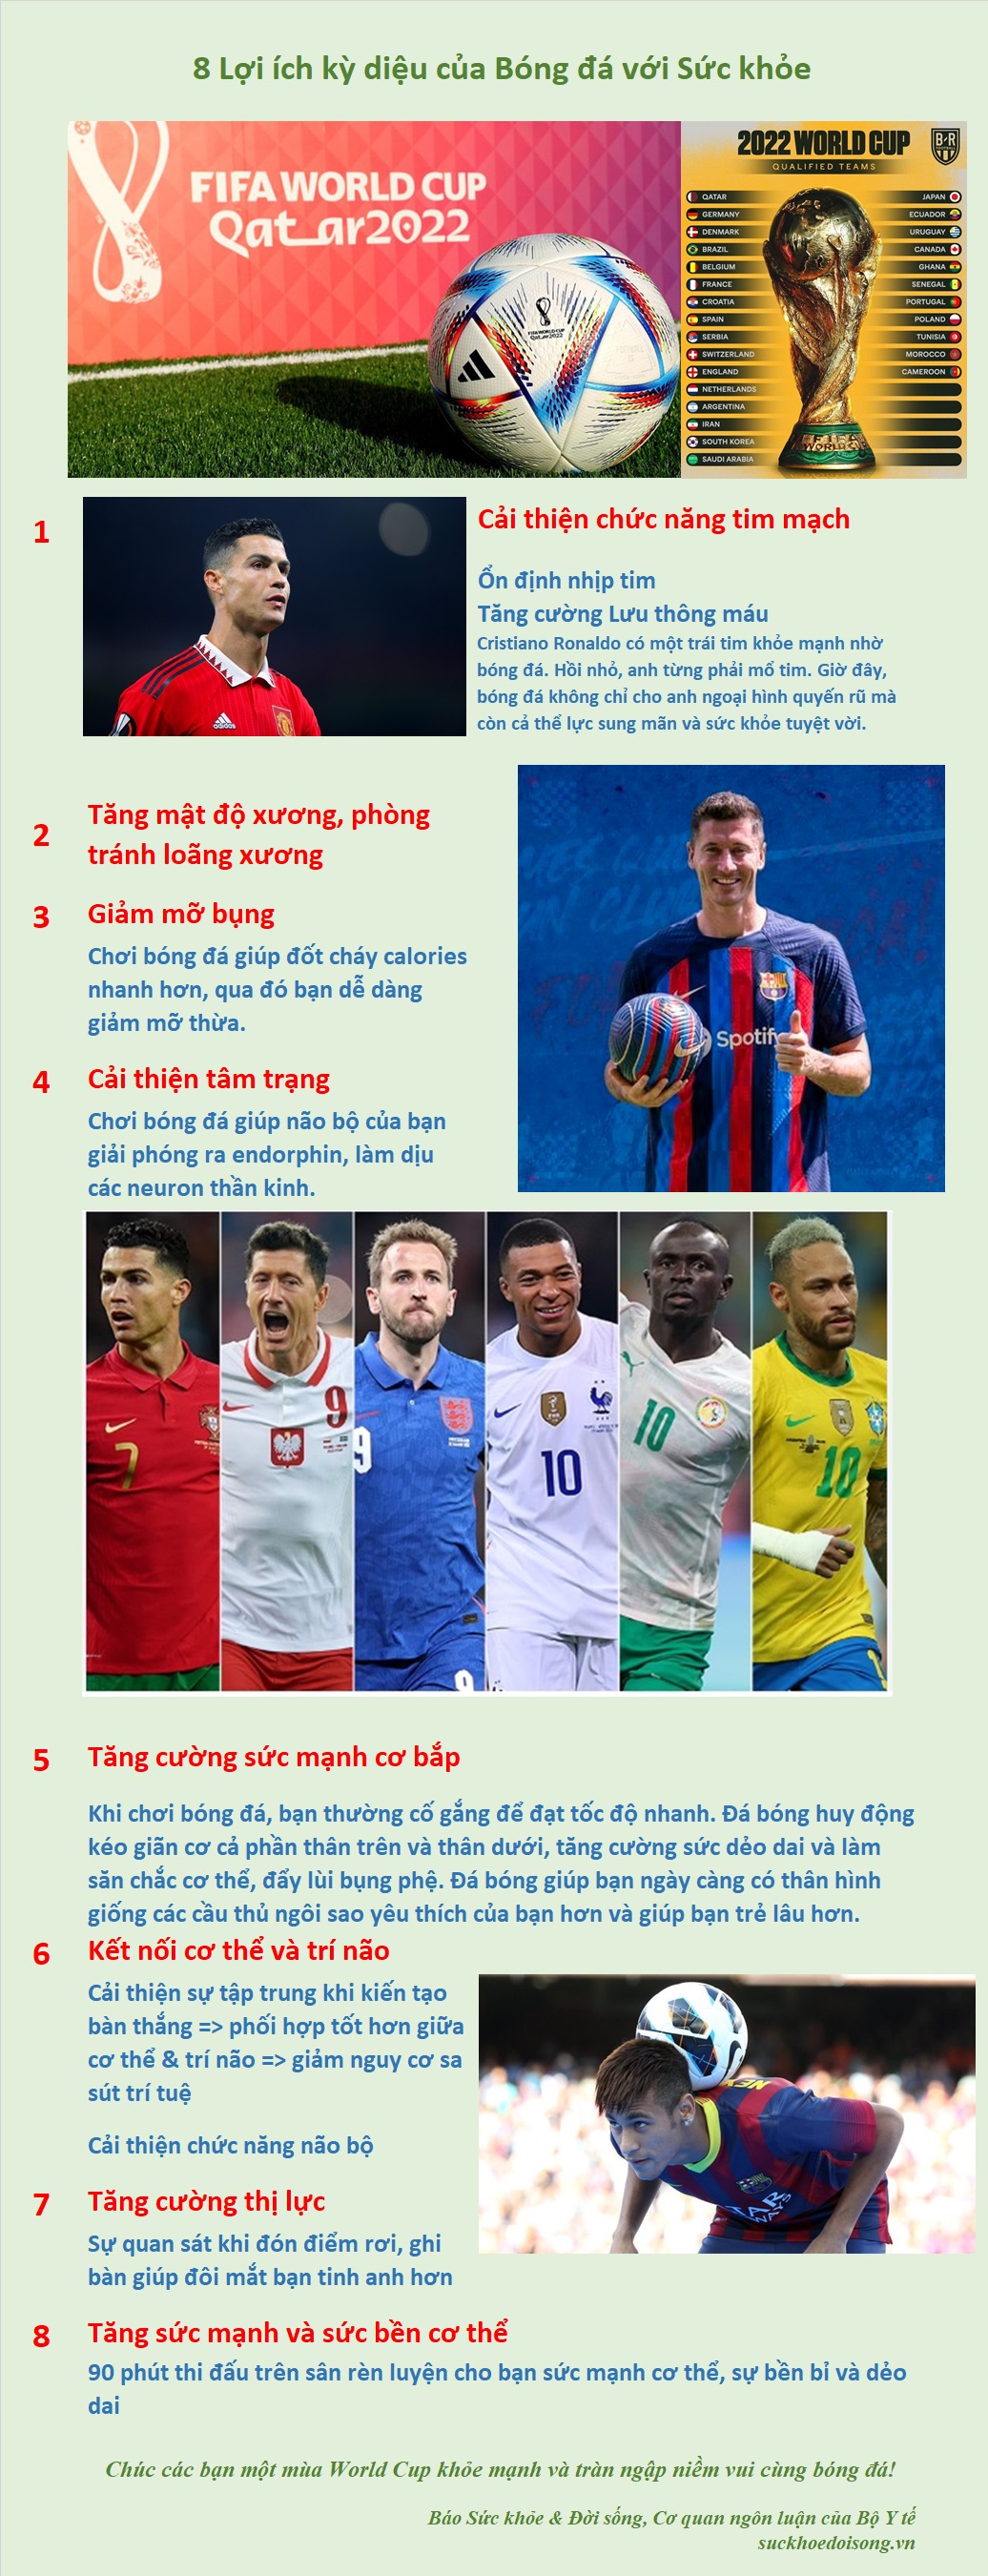 [Infographic] - 8 Lợi ích kỳ diệu của bóng đá với sức khỏe